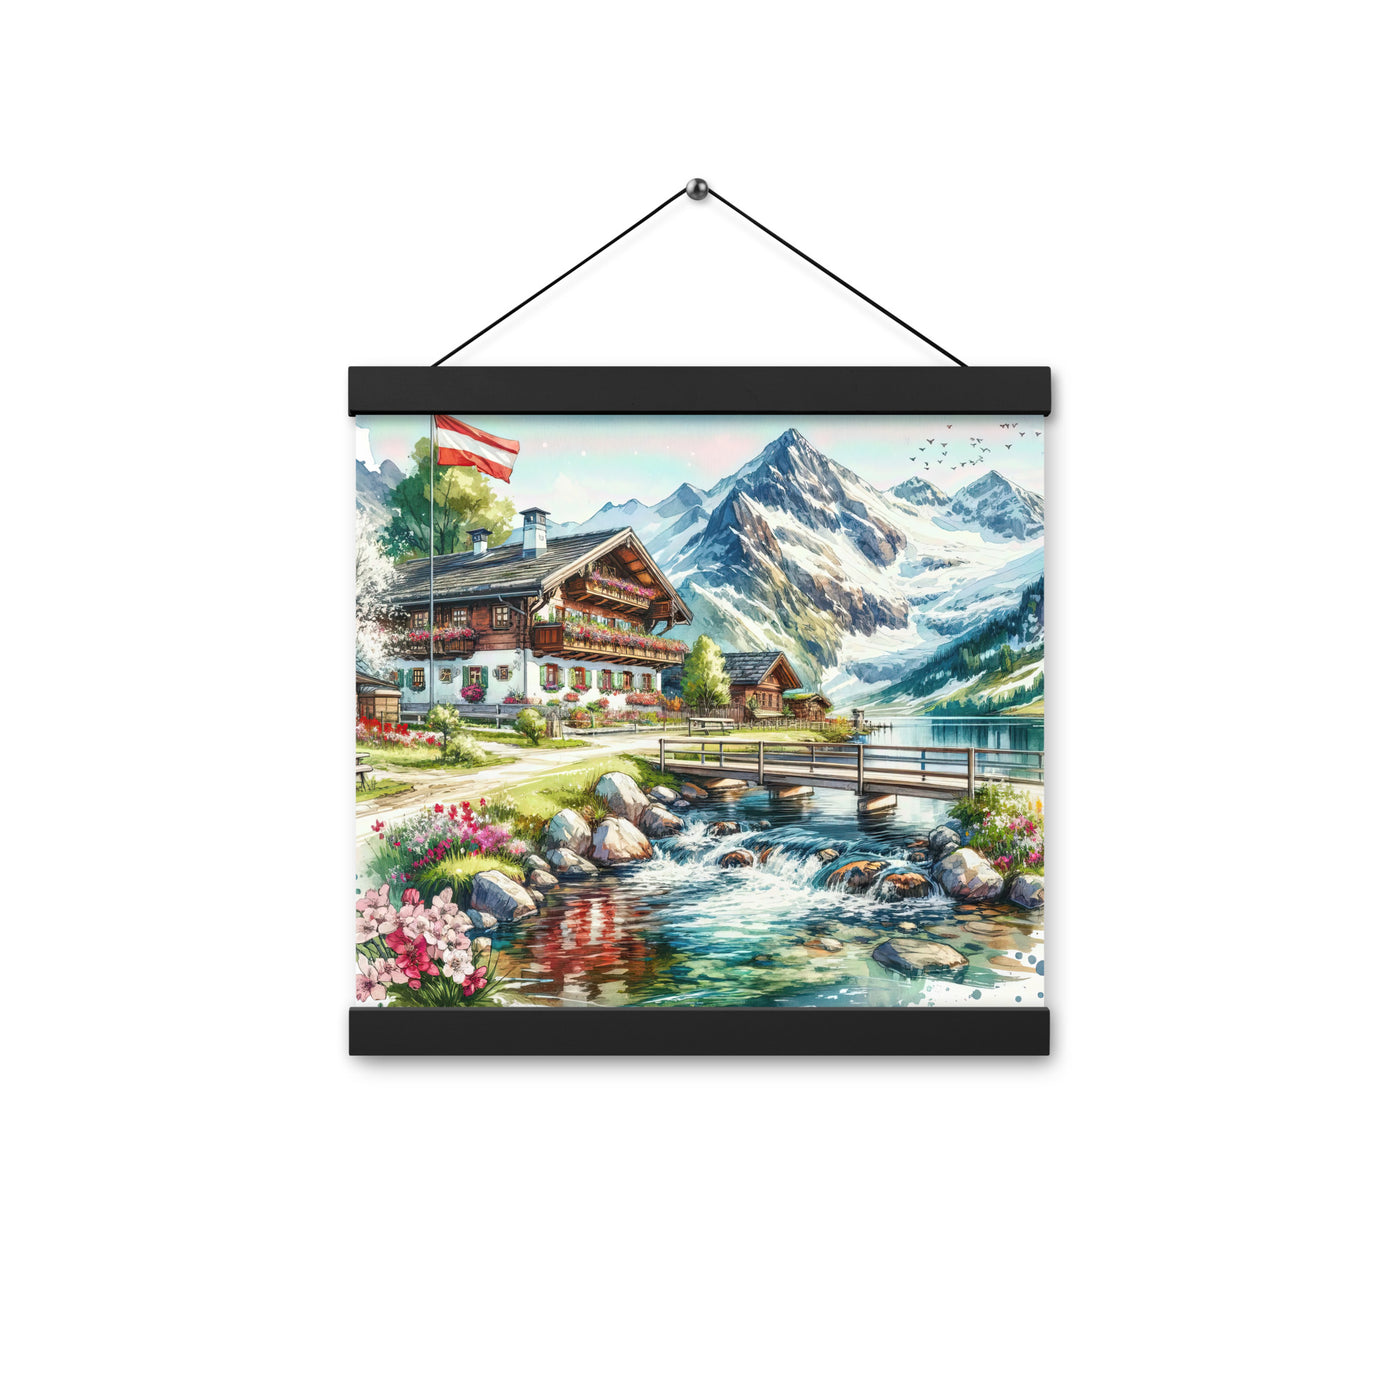 Aquarell der frühlingshaften Alpenkette mit österreichischer Flagge und schmelzendem Schnee - Enhanced Matte Paper Poster With Hanger berge xxx yyy zzz 30.5 x 30.5 cm